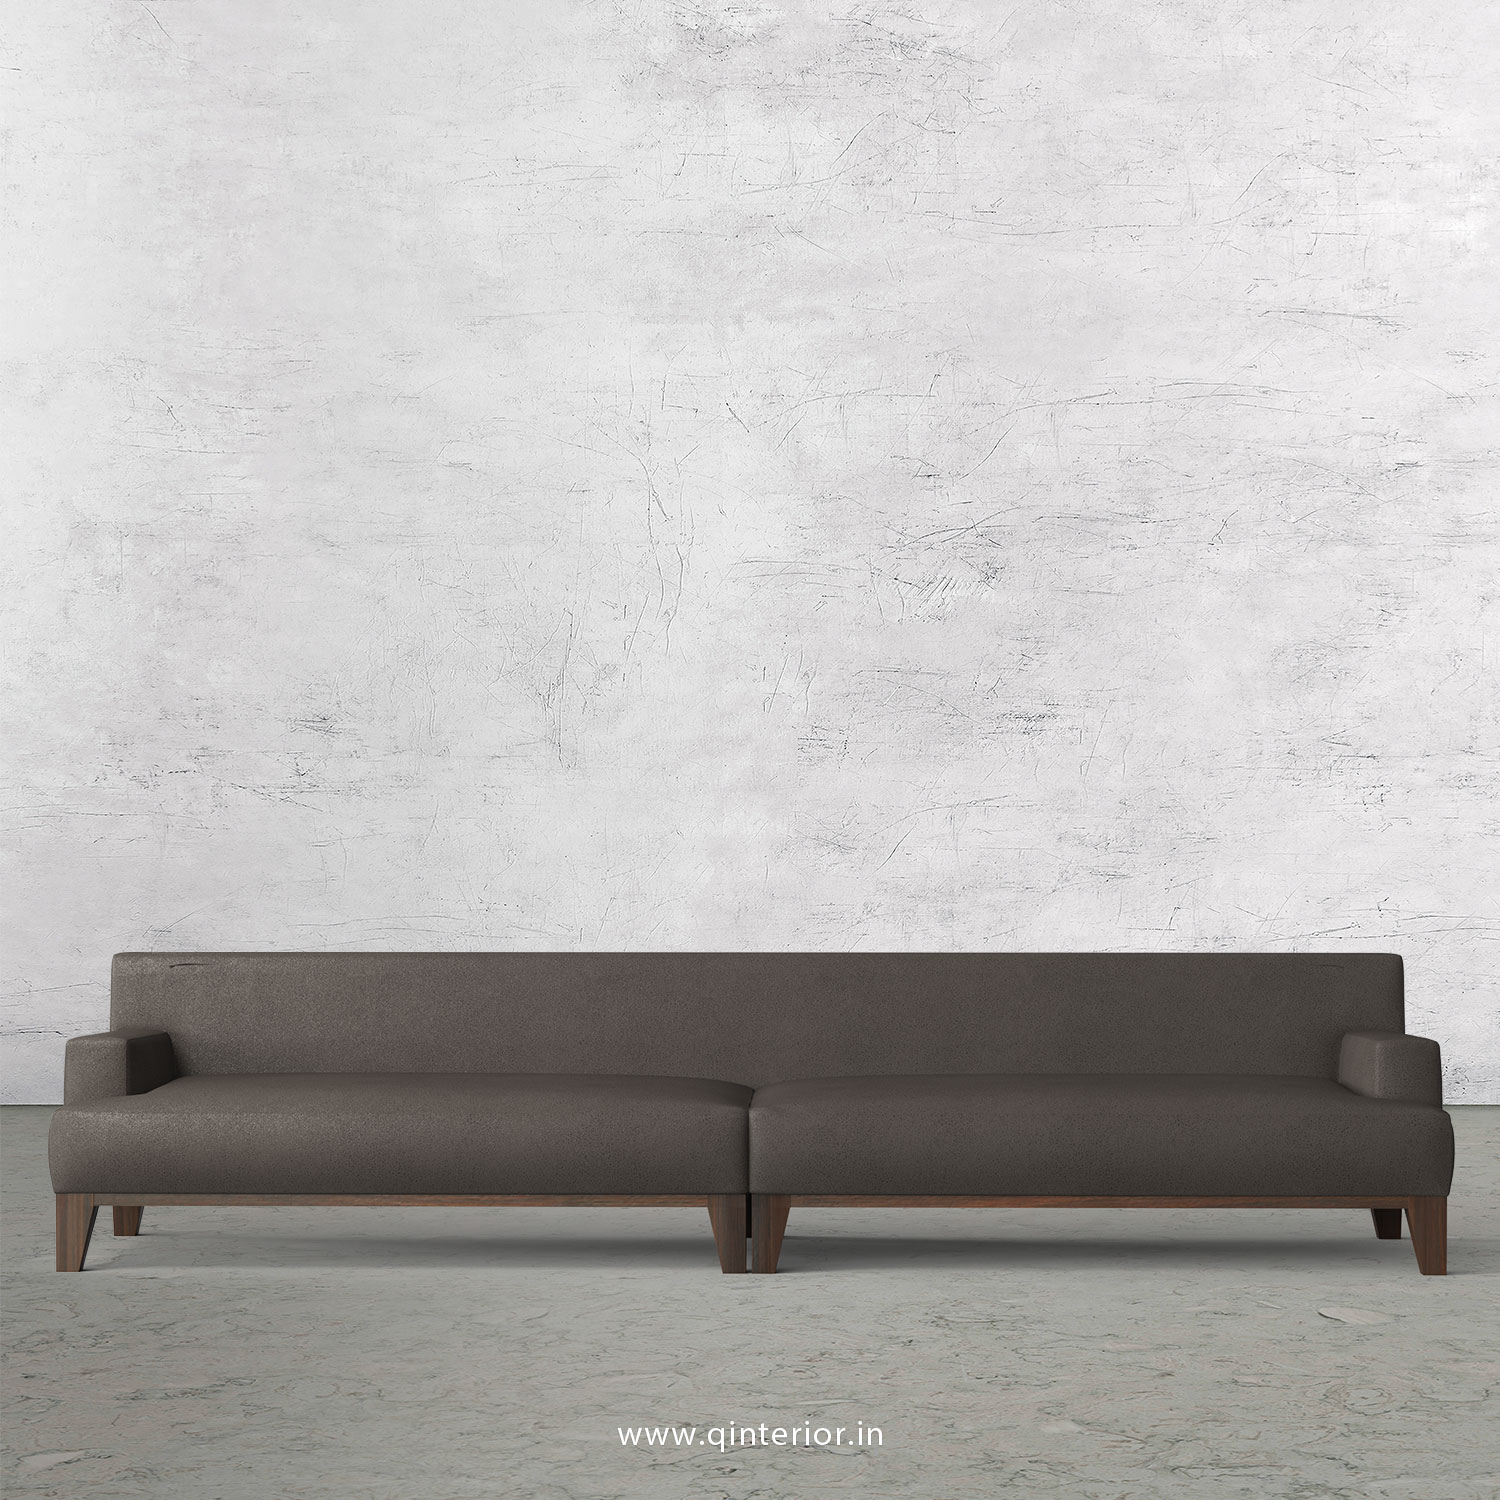 QUADRO 4 Seater Sofa in Fab Leather Fabric - SFA010 FL15